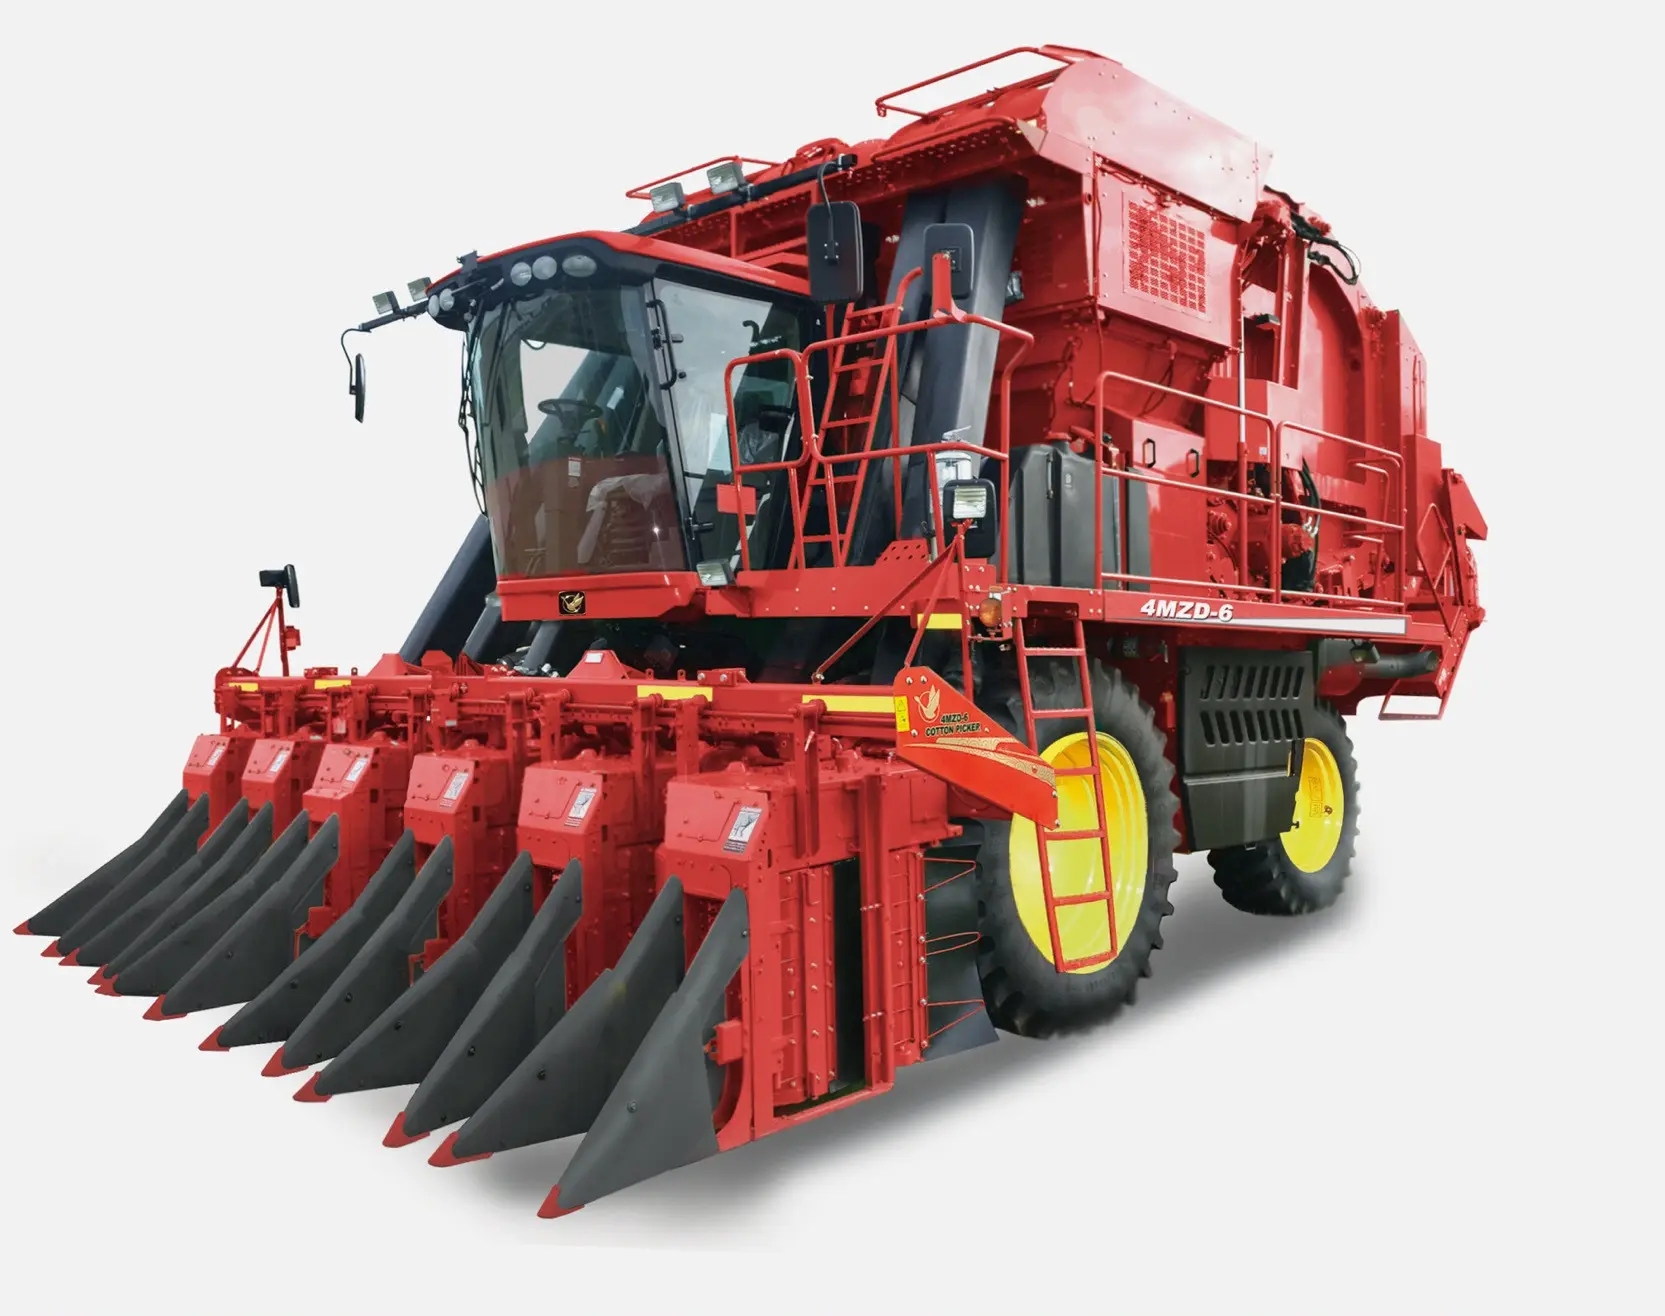 ماكينة زراعية عالية السرعة من القطن, 6 صفوف مجمعة من القطن ، سعر المصنع